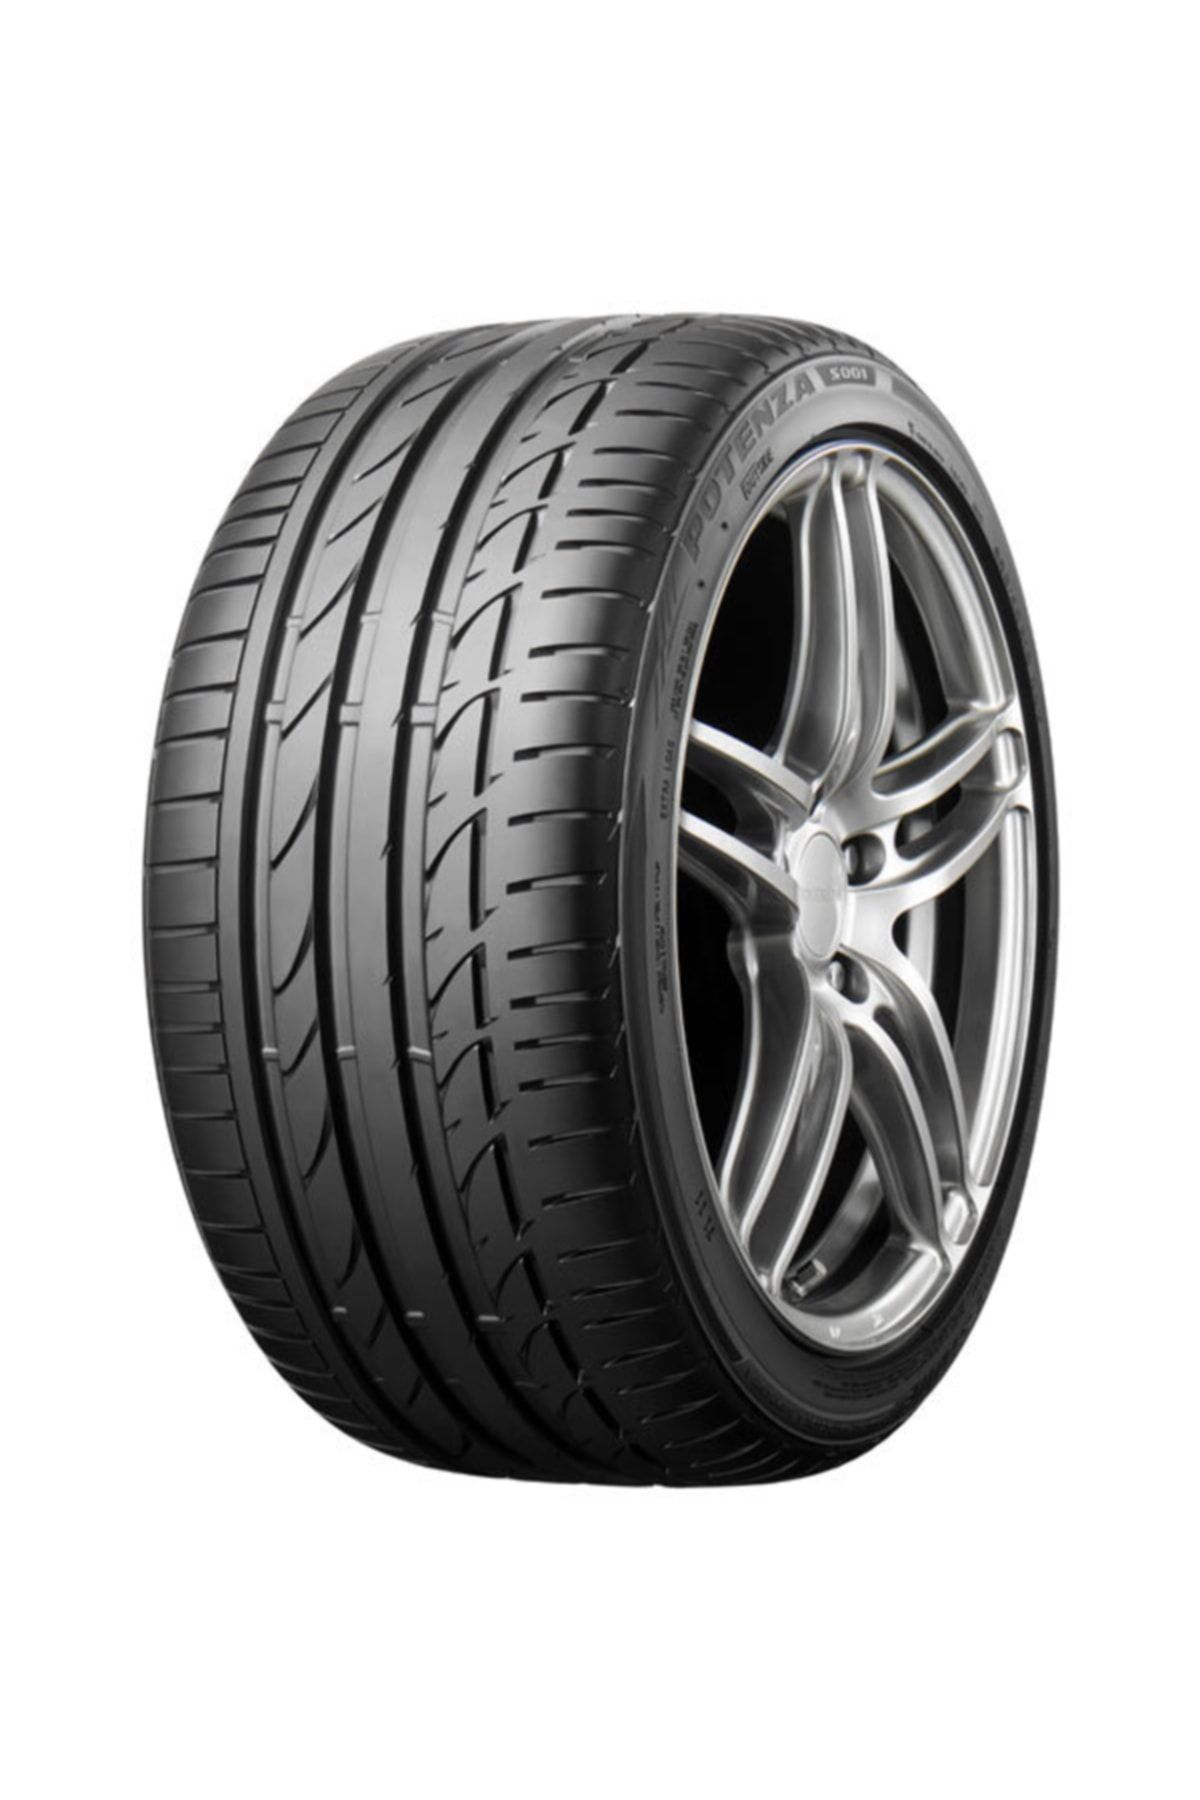 Bridgestone 245/35r18 88y Rft Potenza S001 (YAZ) (2020)